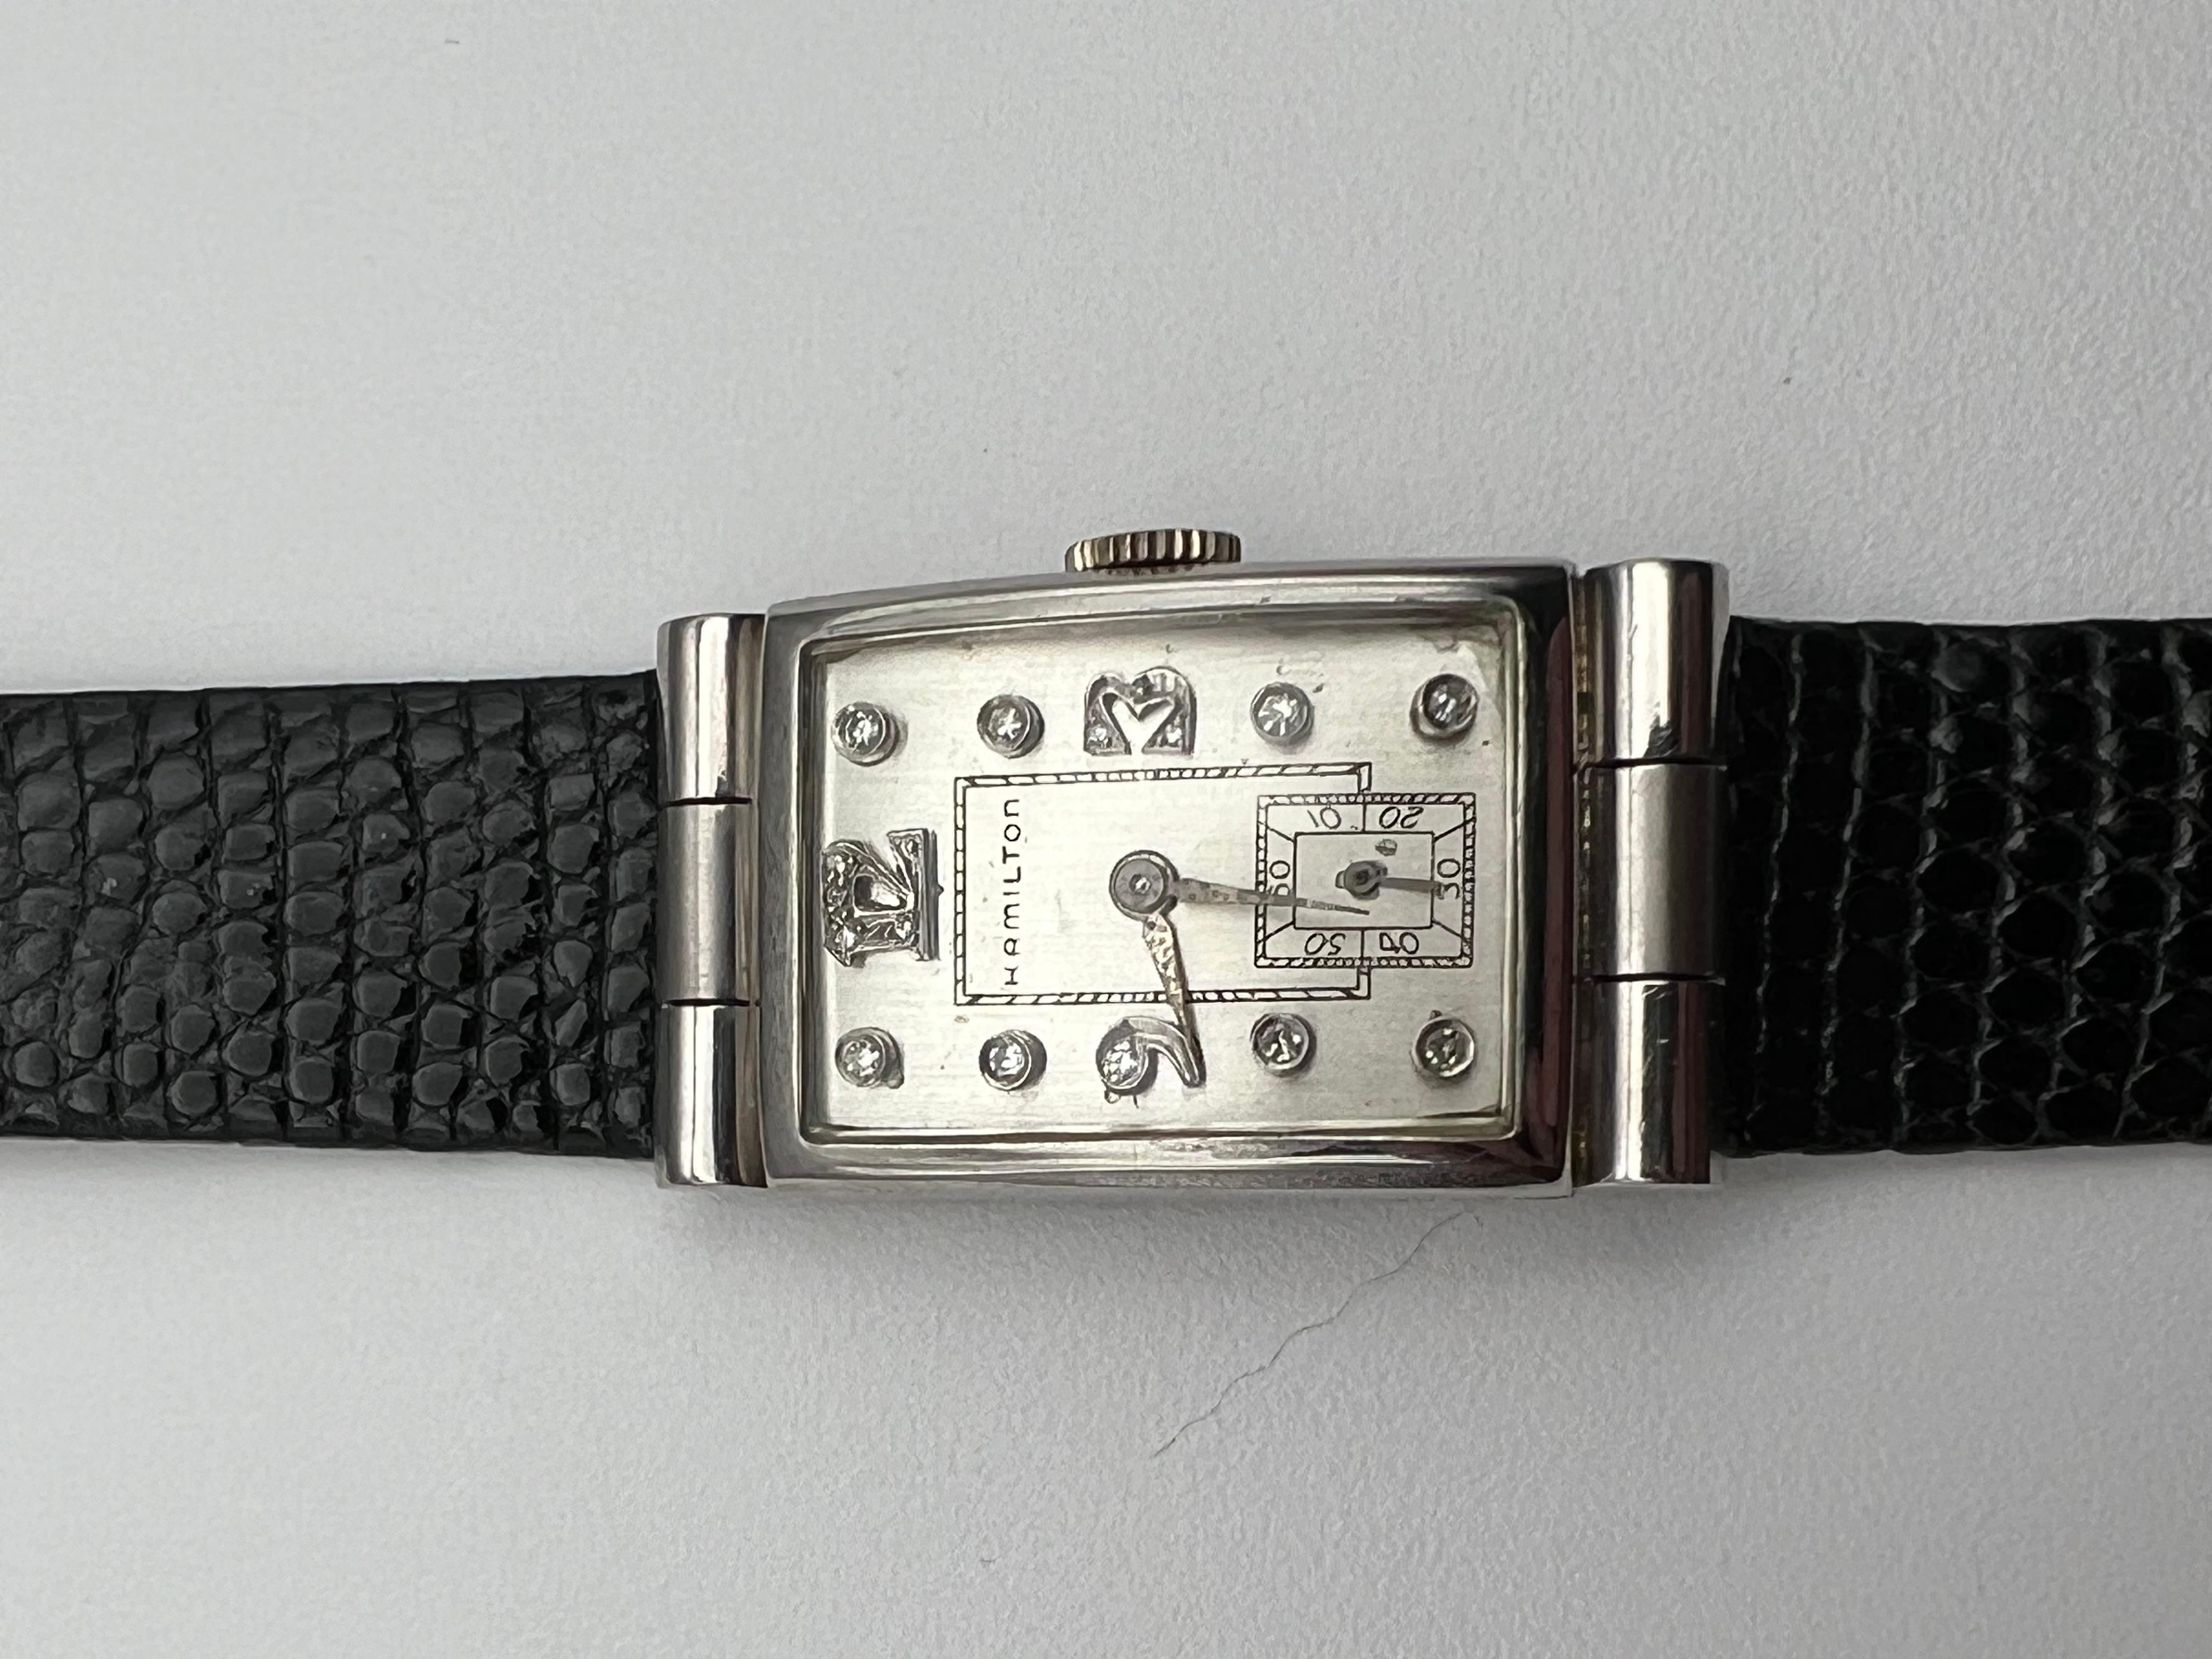 Bienvenue sur Vintage Watch Corner, où l'on peut trouver les garde-temps les plus insolites qui, à coup sûr, ont des histoires qui ne seront jamais révélées. Tout le monde regarde votre montre et elle représente qui vous êtes, vos valeurs et votre